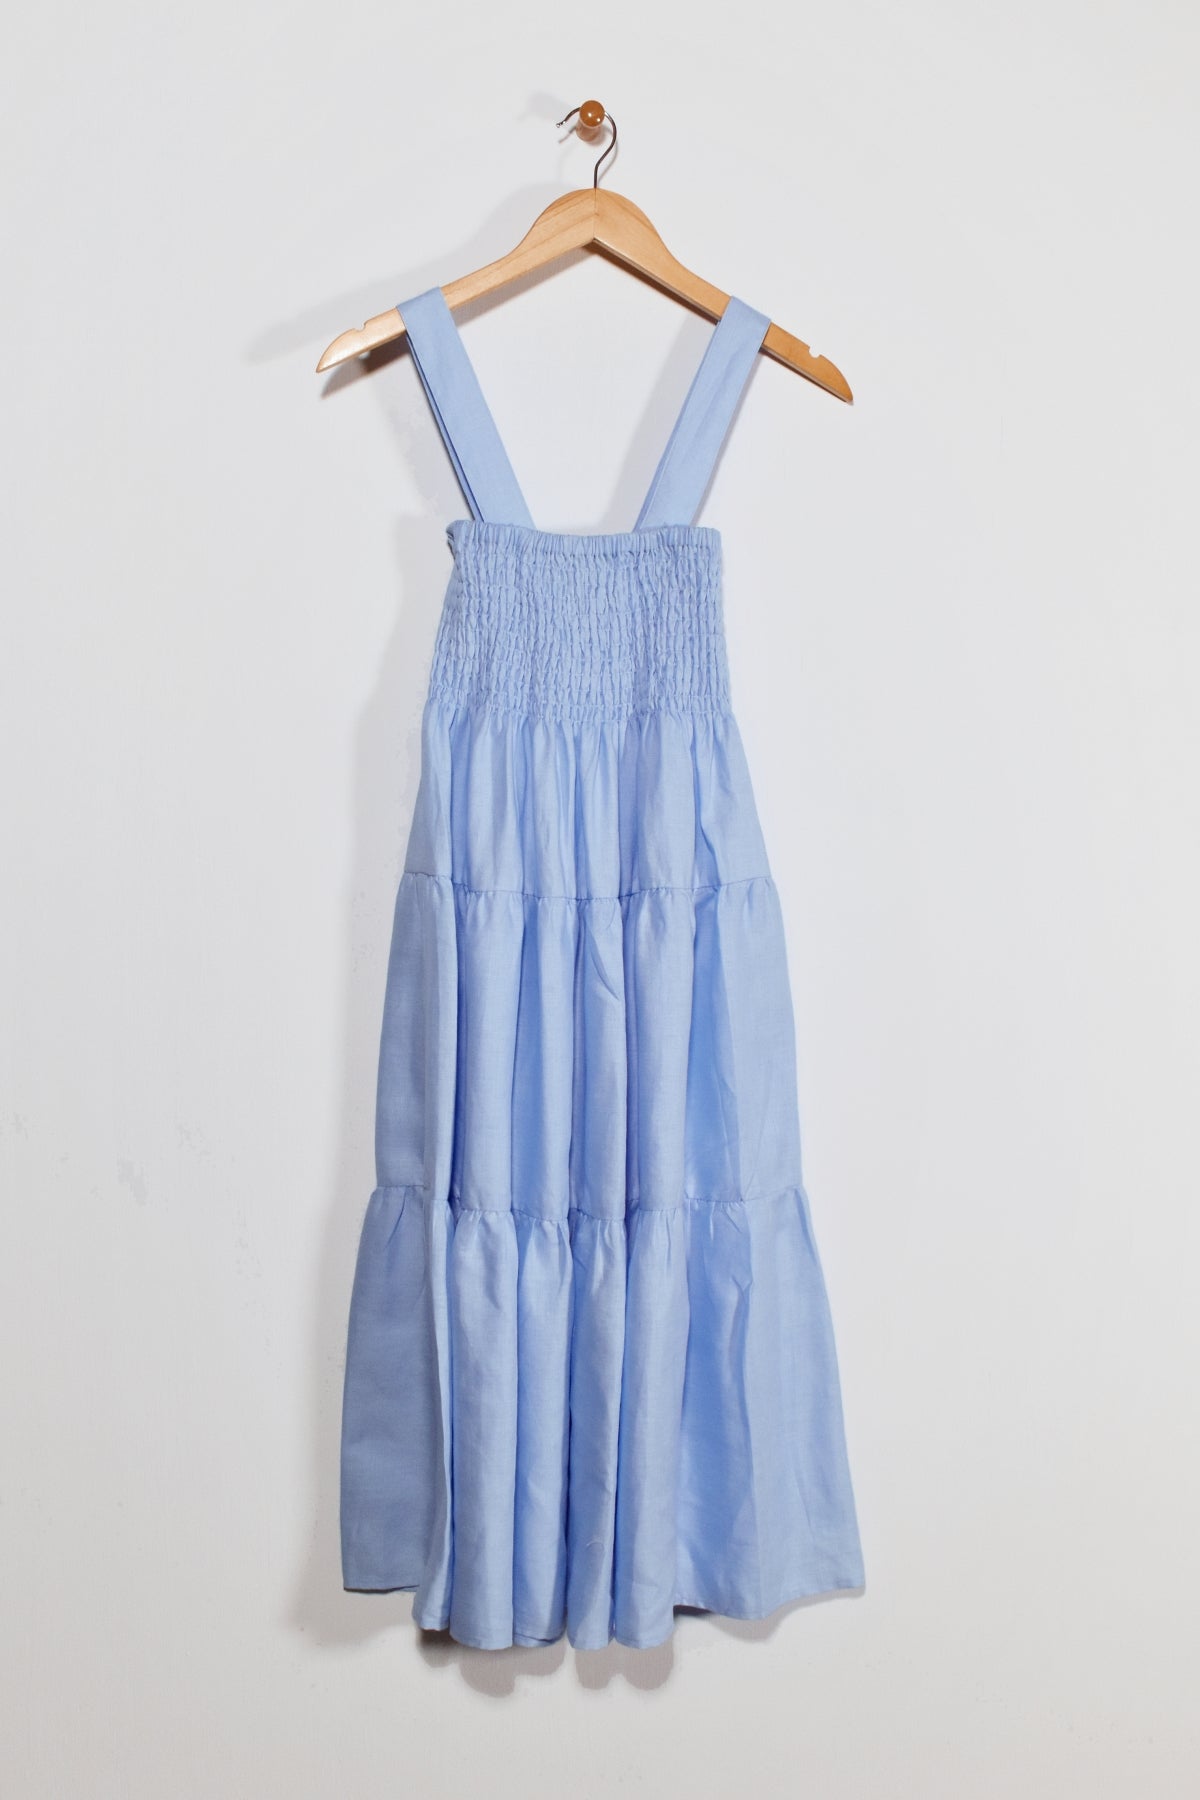 36" Shirred Tiered Dress/Skirt Lilli Sucré